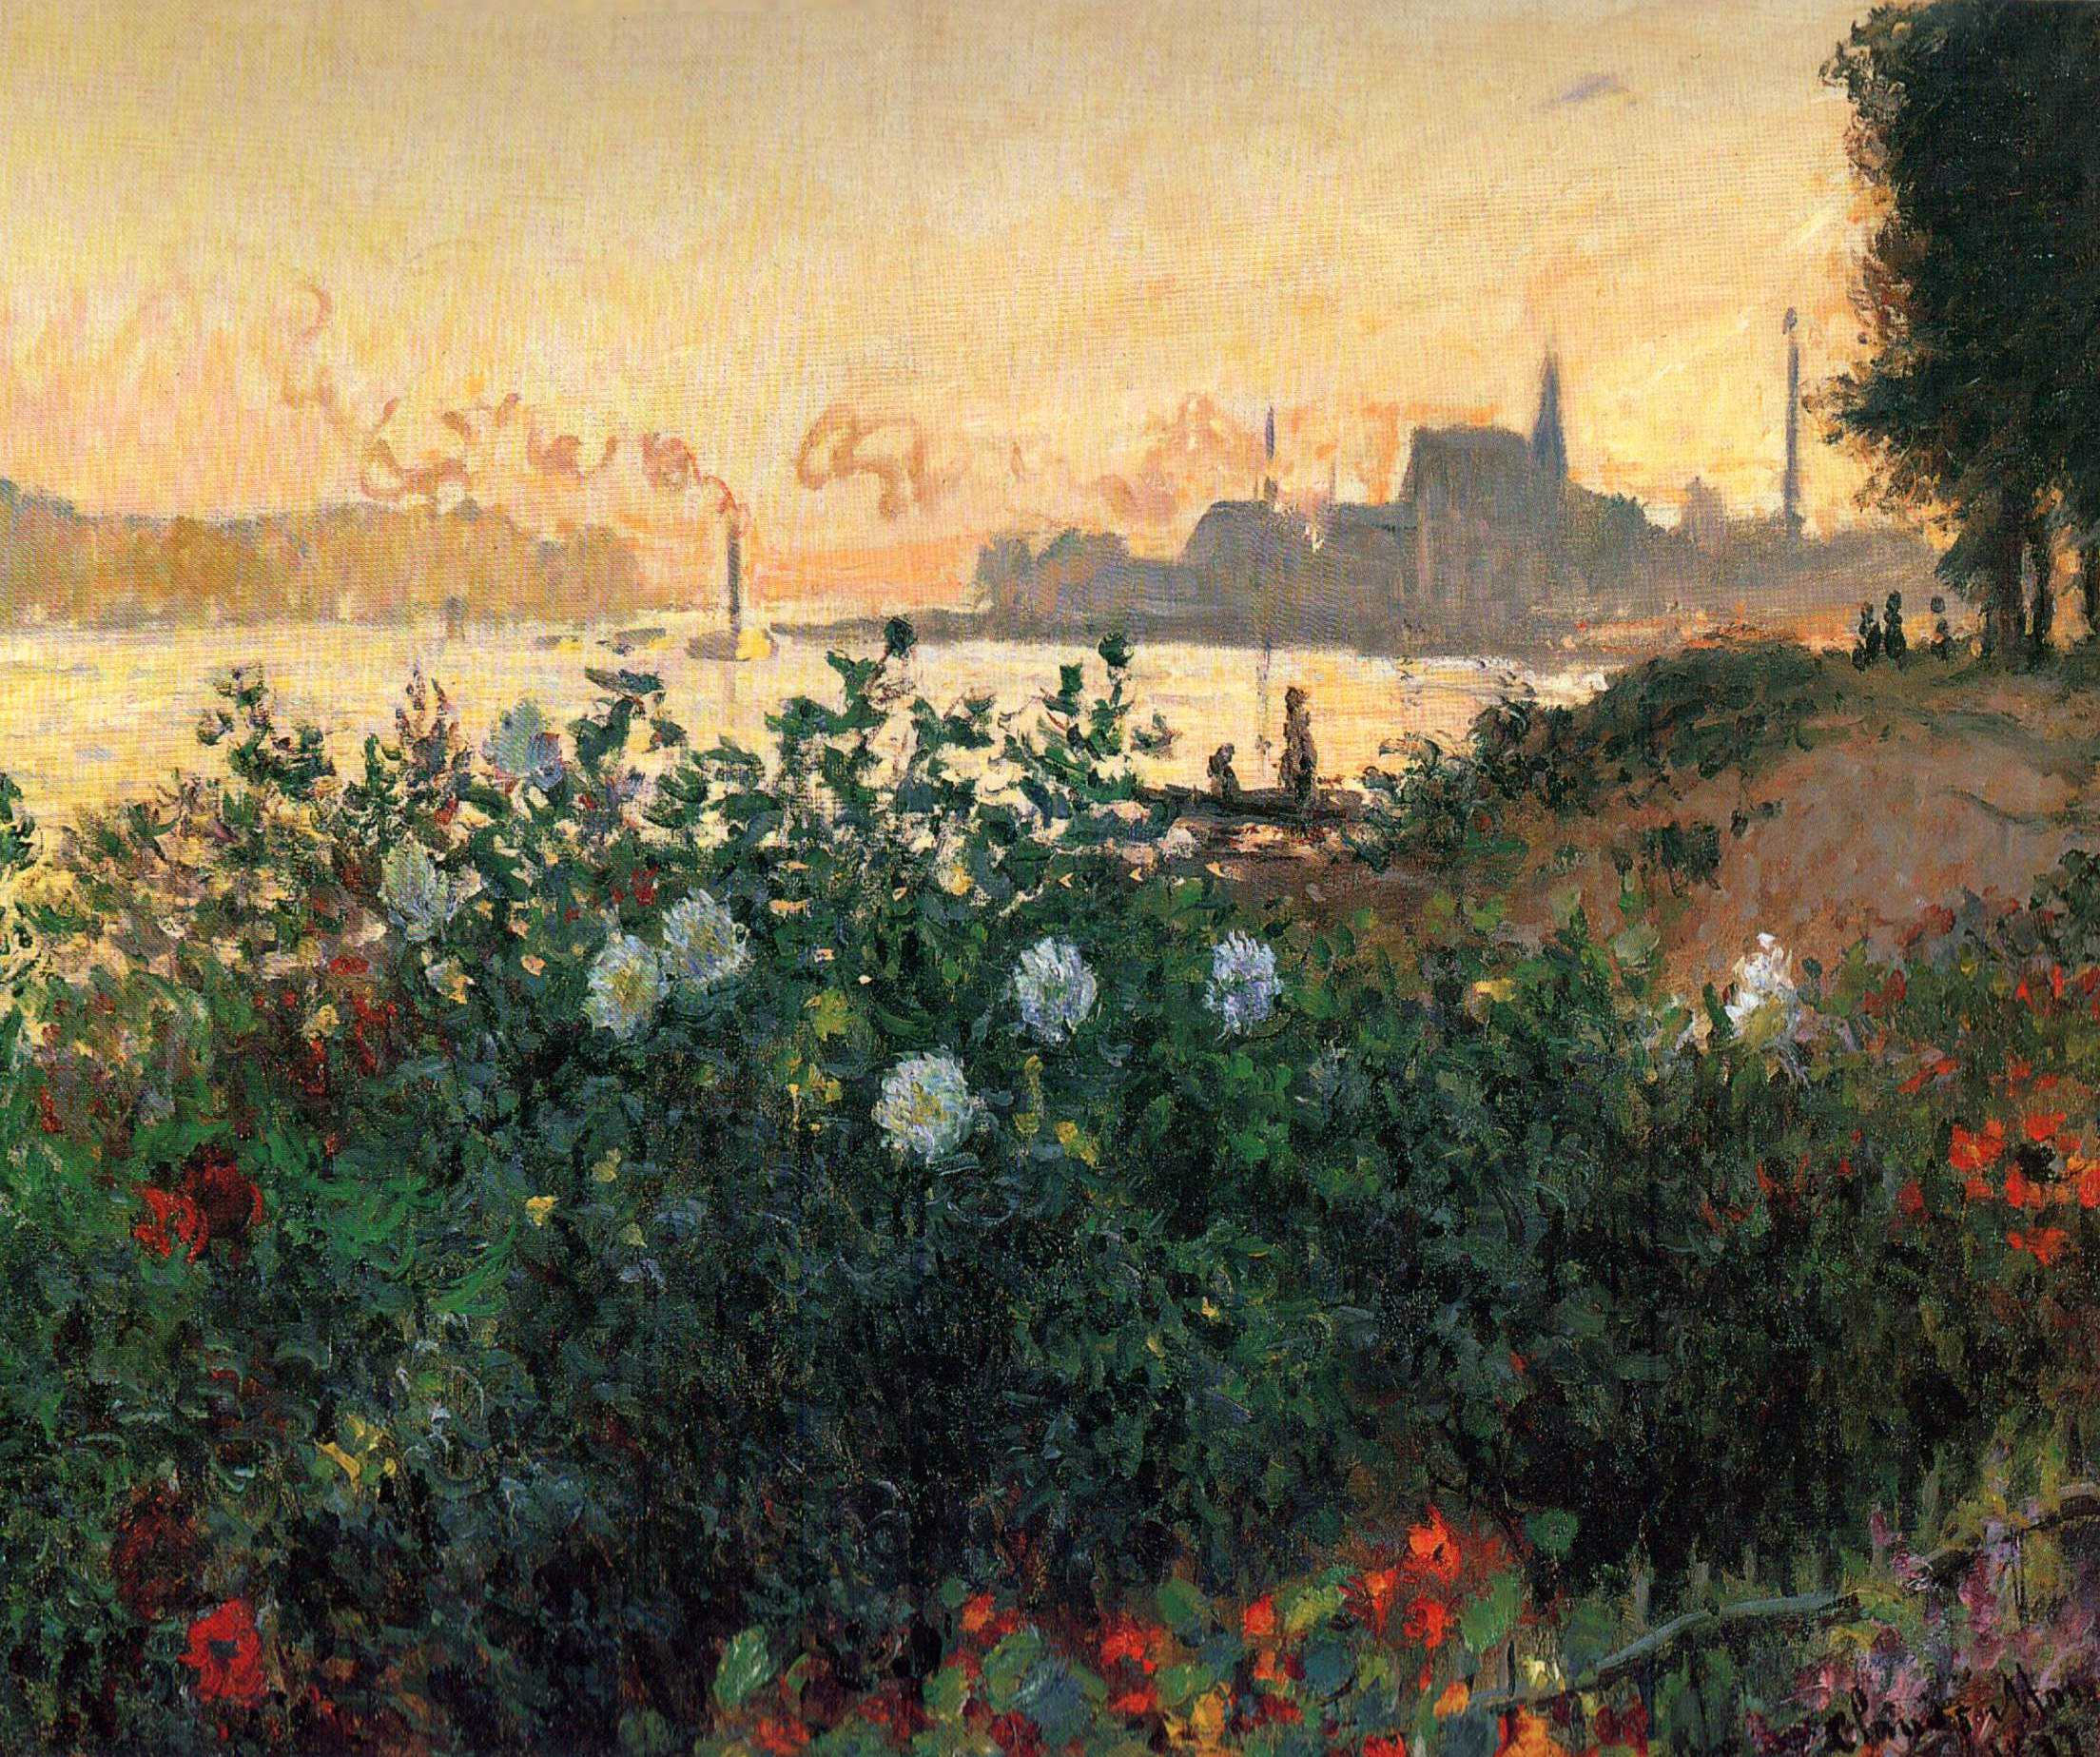 アルジャントゥイユの川岸に咲く花々 by Claude Monet - 1877 - - 